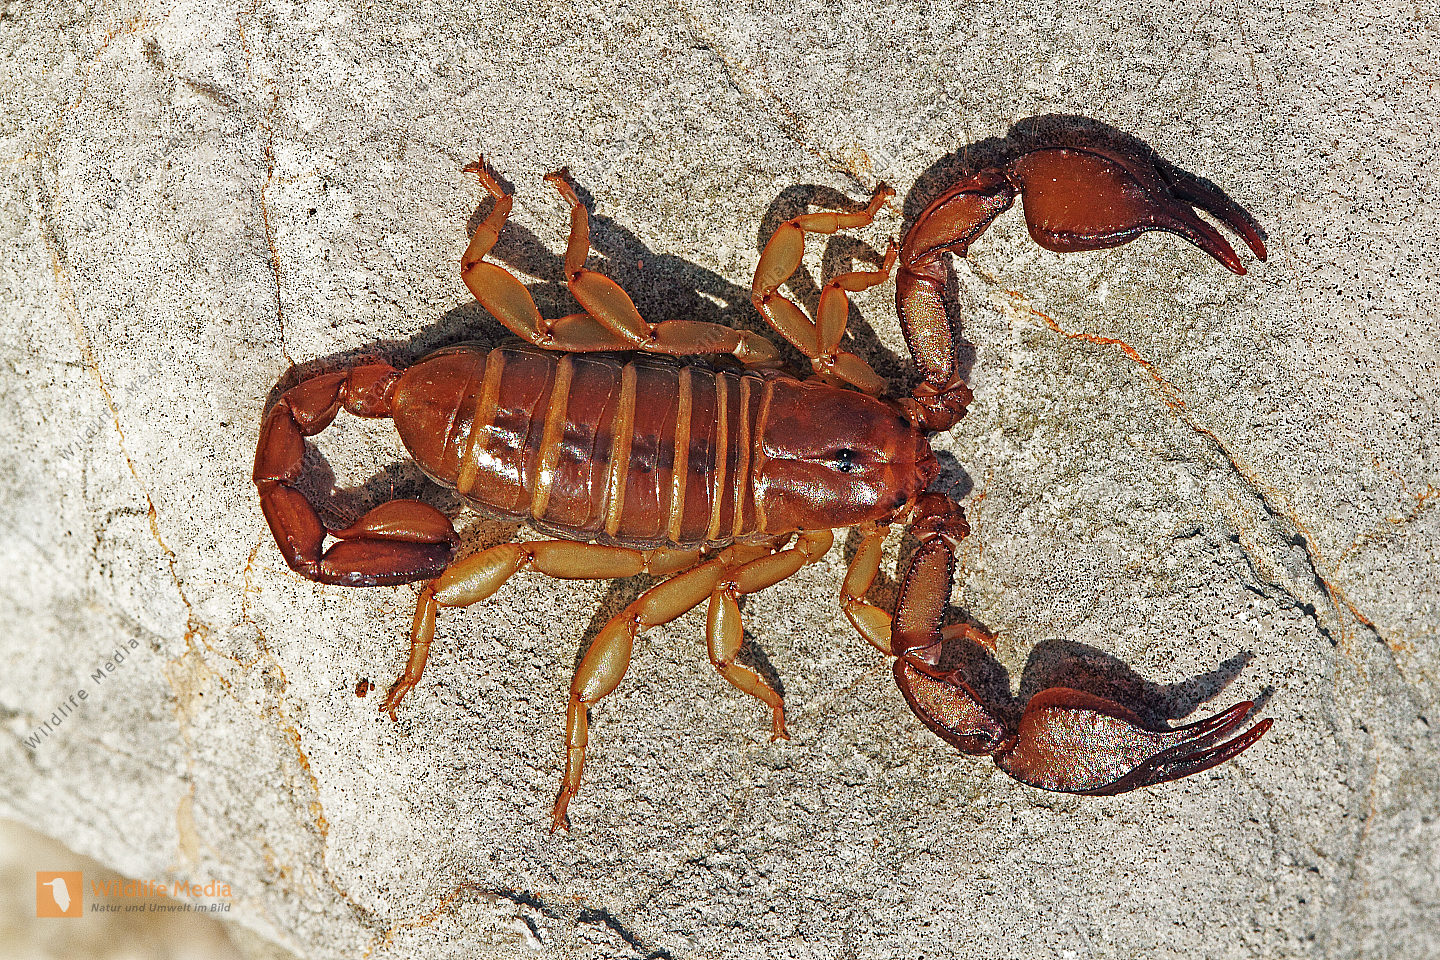 bestellen-europ-ischer-skorpion-europ-ischer-skorpion-in-freier